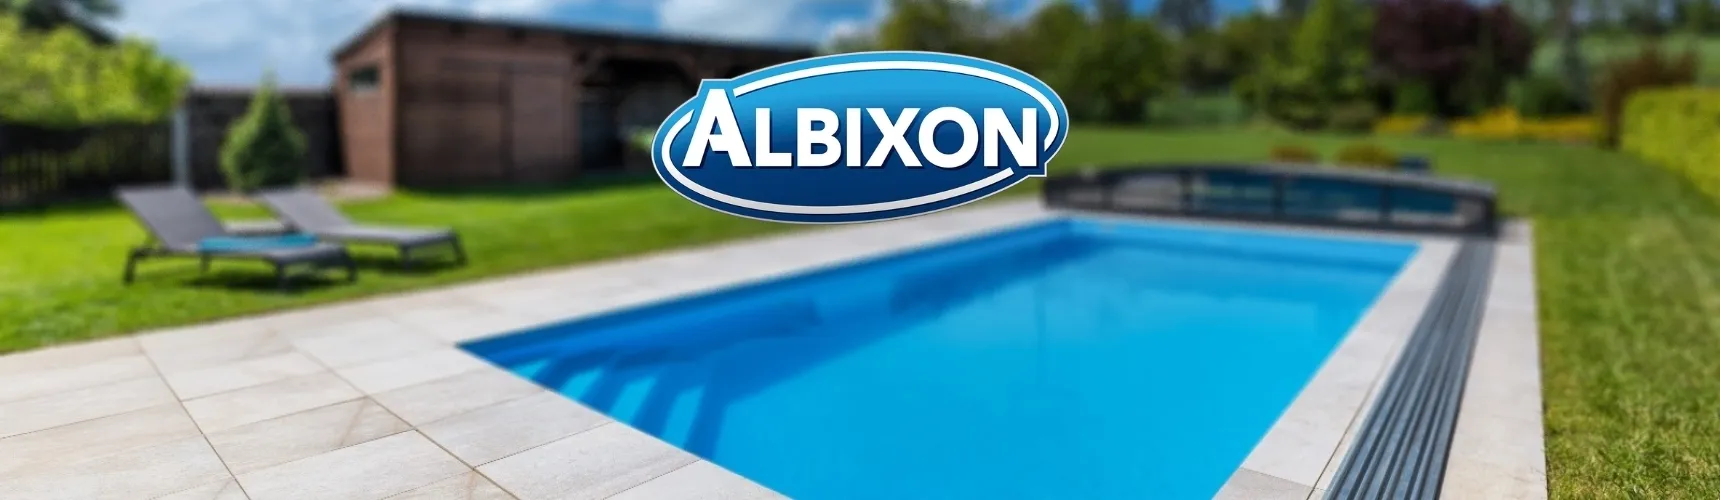 ALBIXON a.s. významný výrobce bazénů a zastřešení